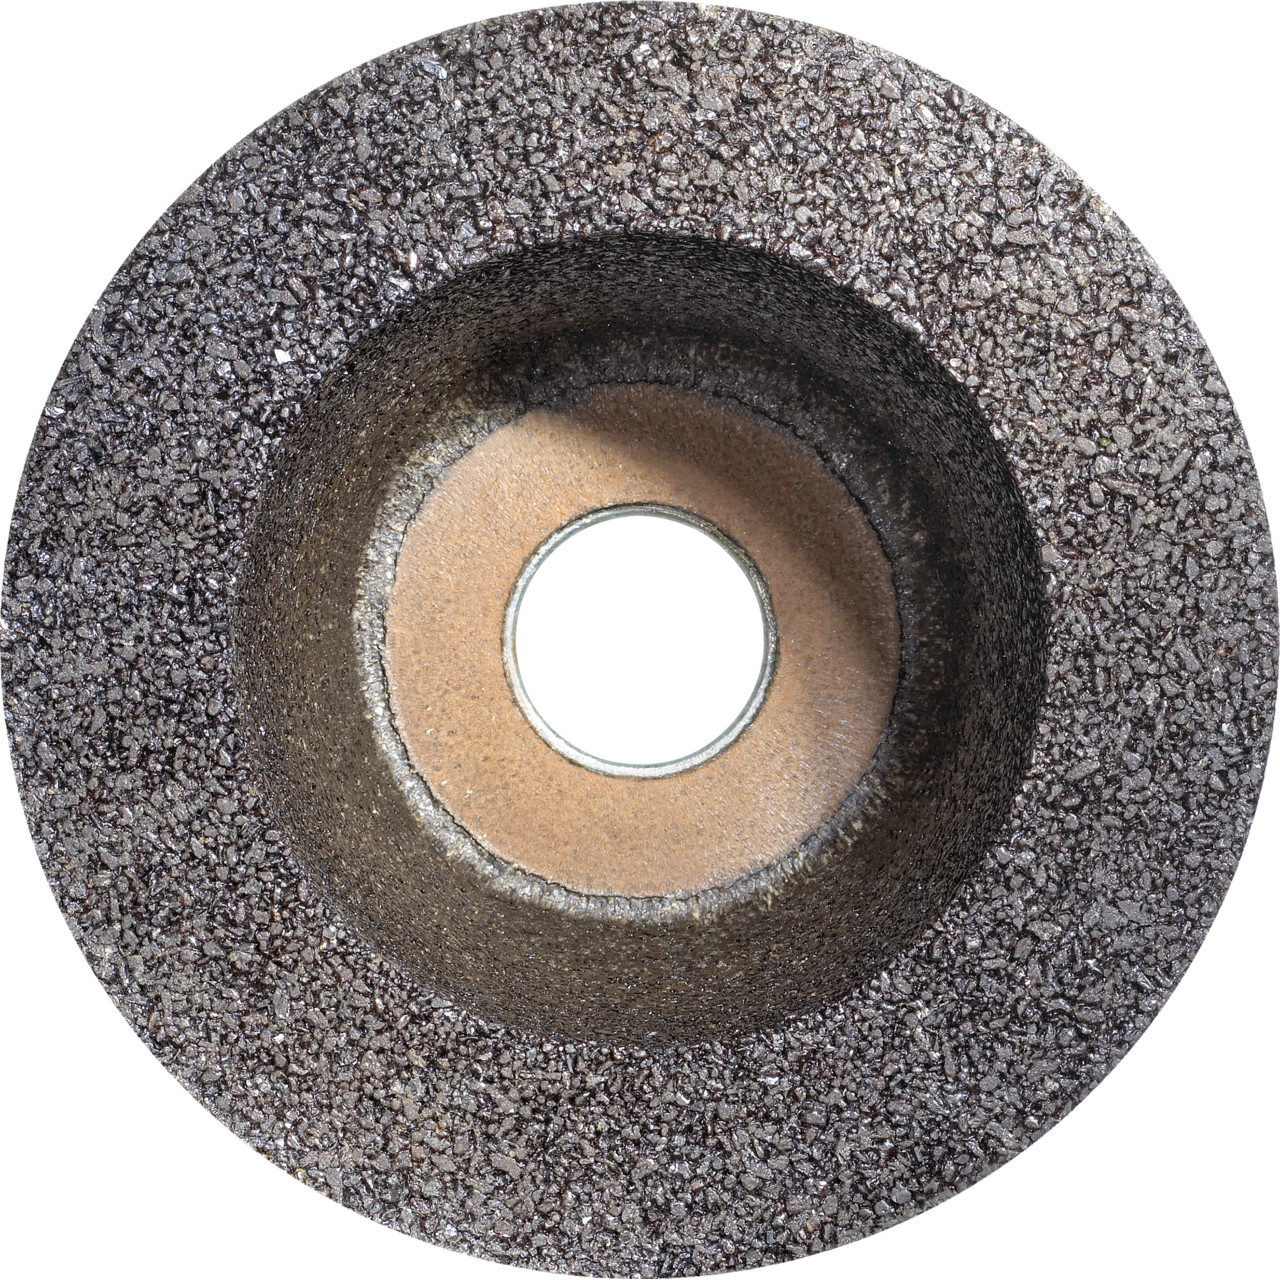 Taza de resina sintética TYROLIT D/JxDxH 110/90x55x22,23 Para piedra, forma: rueda de taza 11BT, Art. 342583